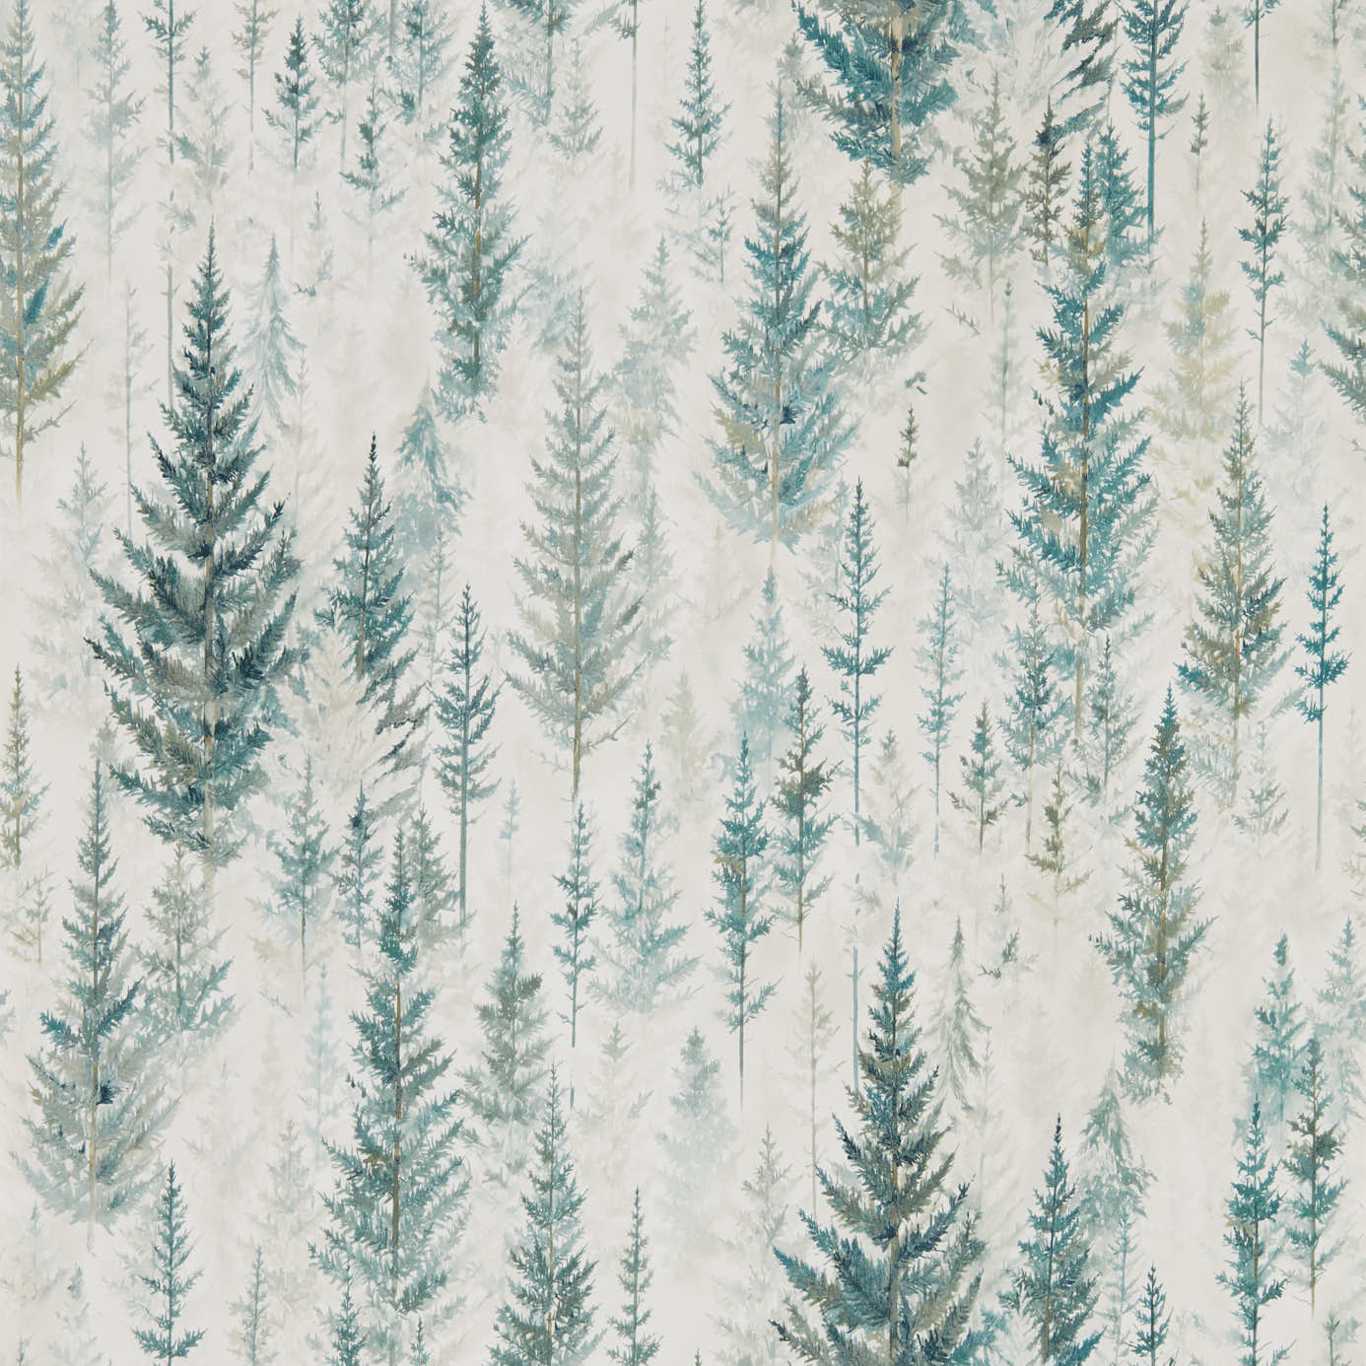 Juniper Pine Forest Wallpaper by SAN